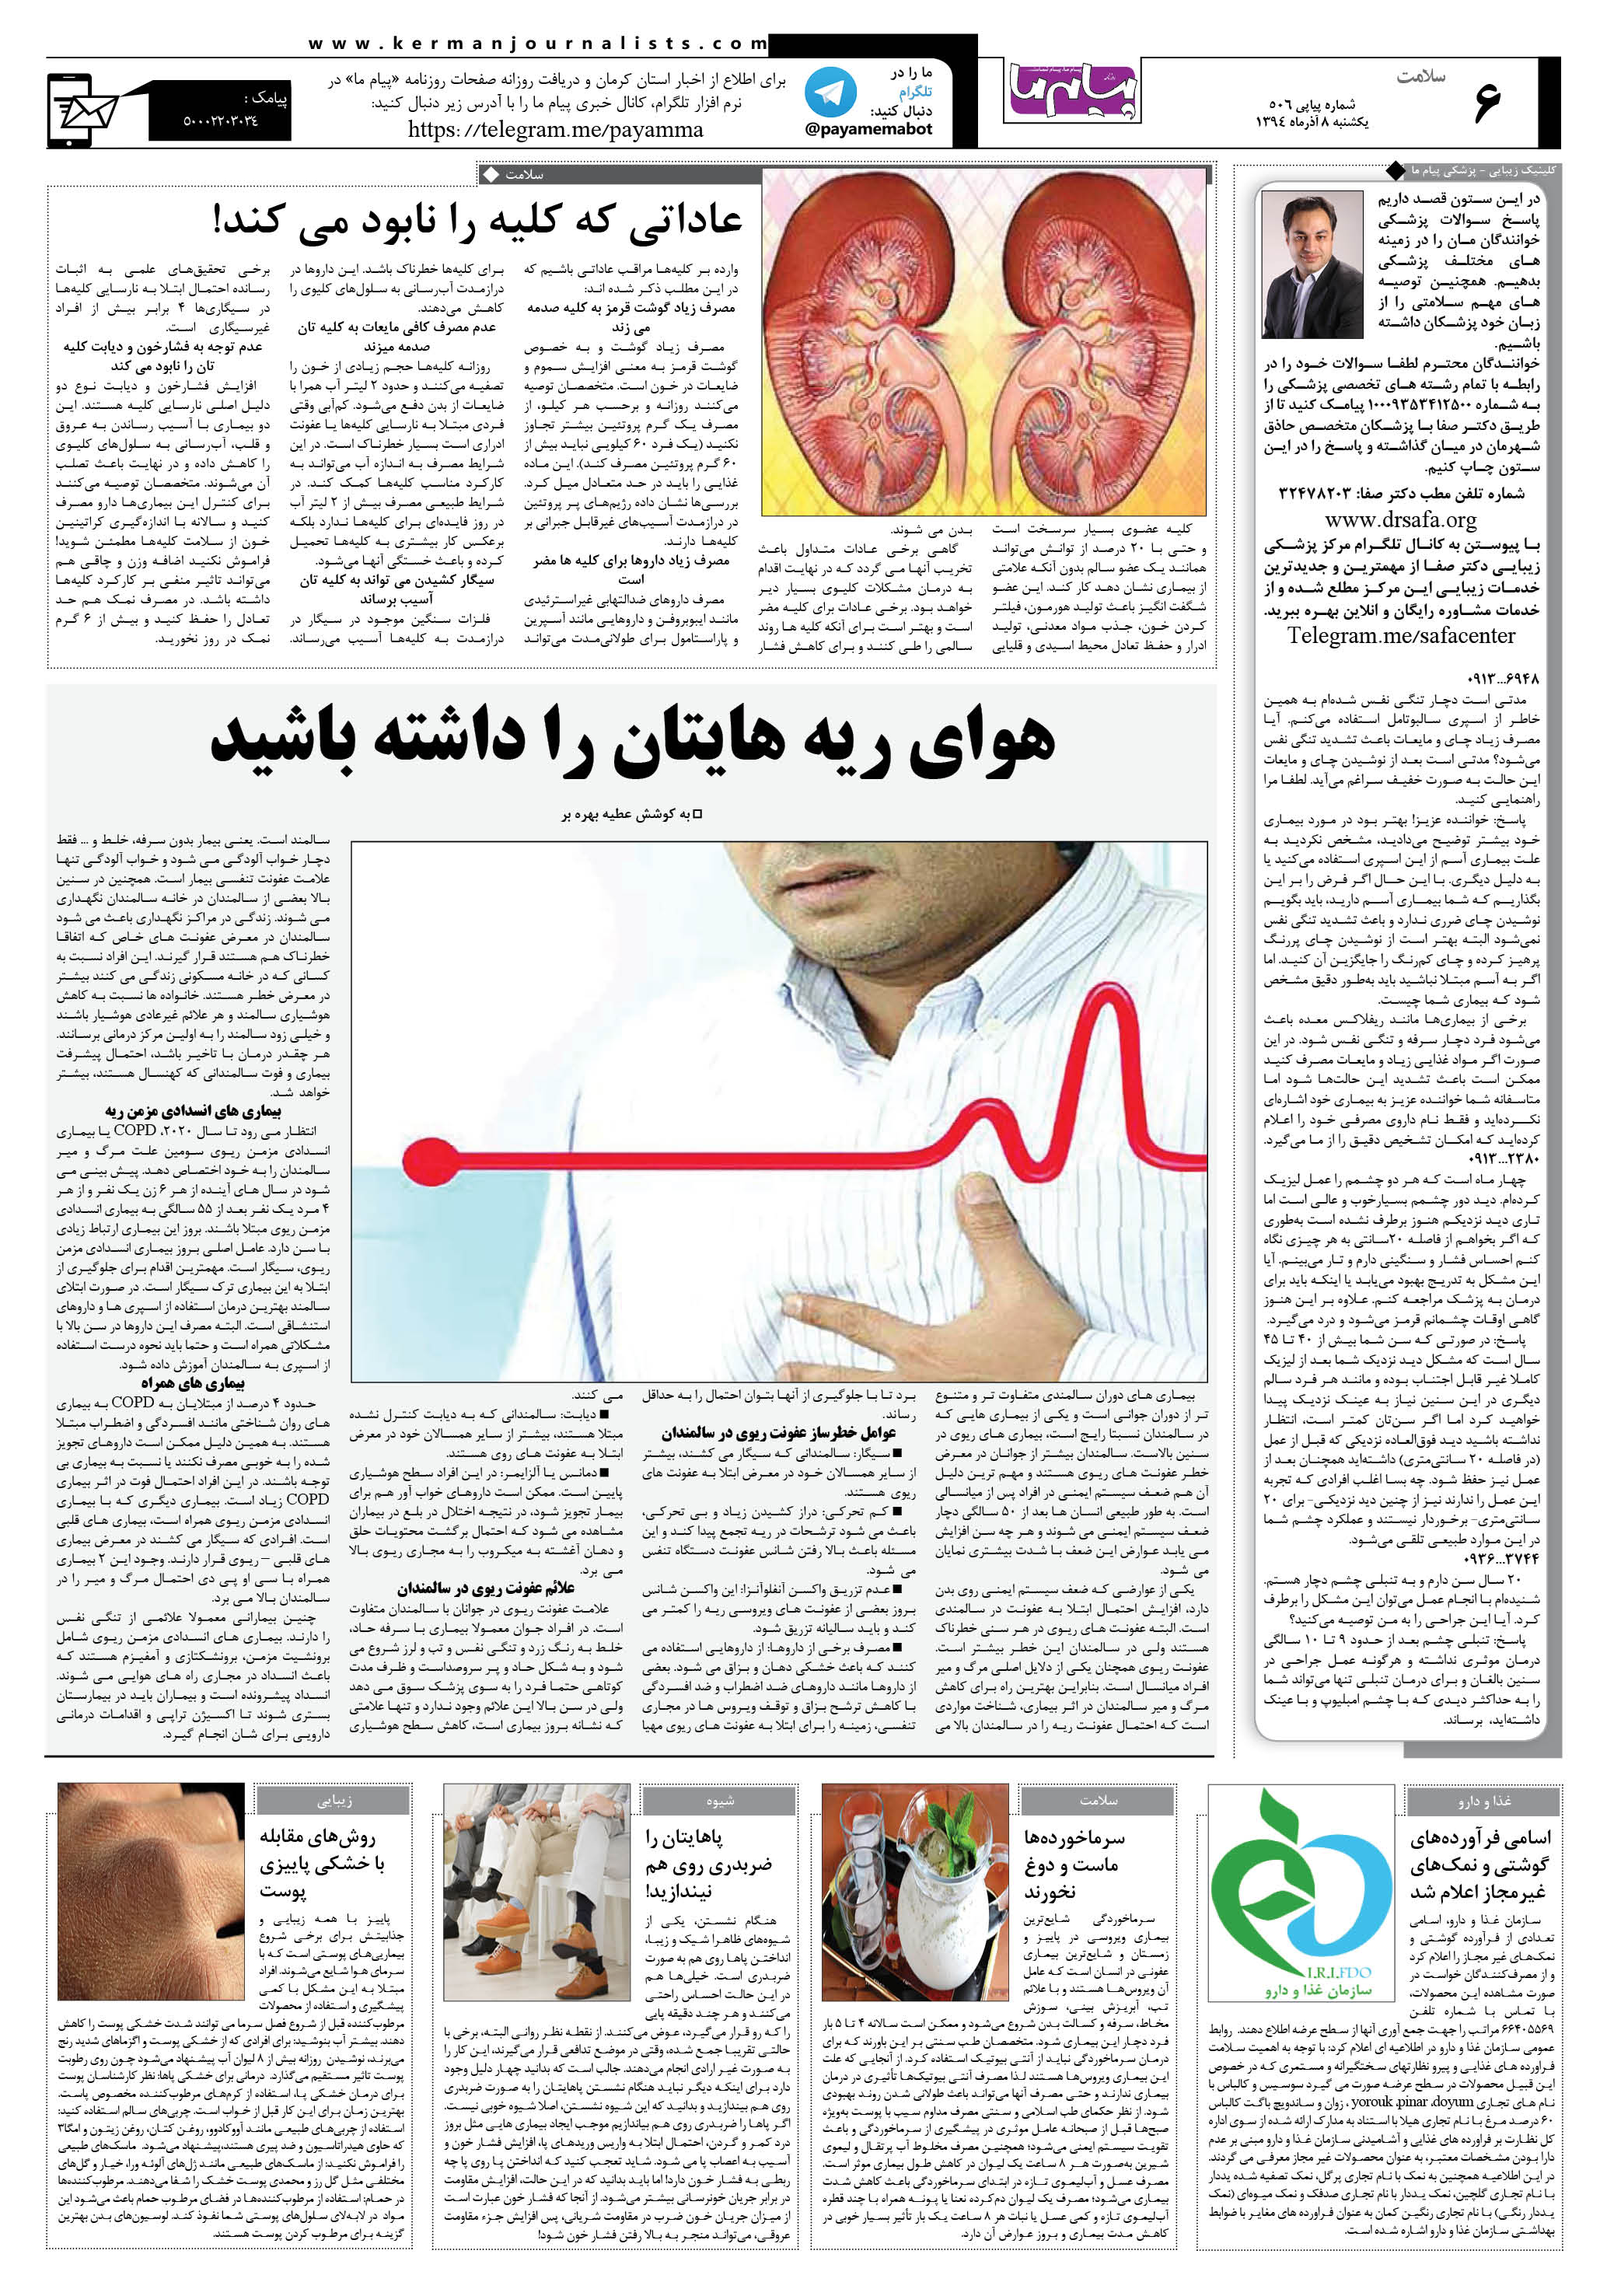 صفحه سلامت شماره سلامت روزنامه پیام ما